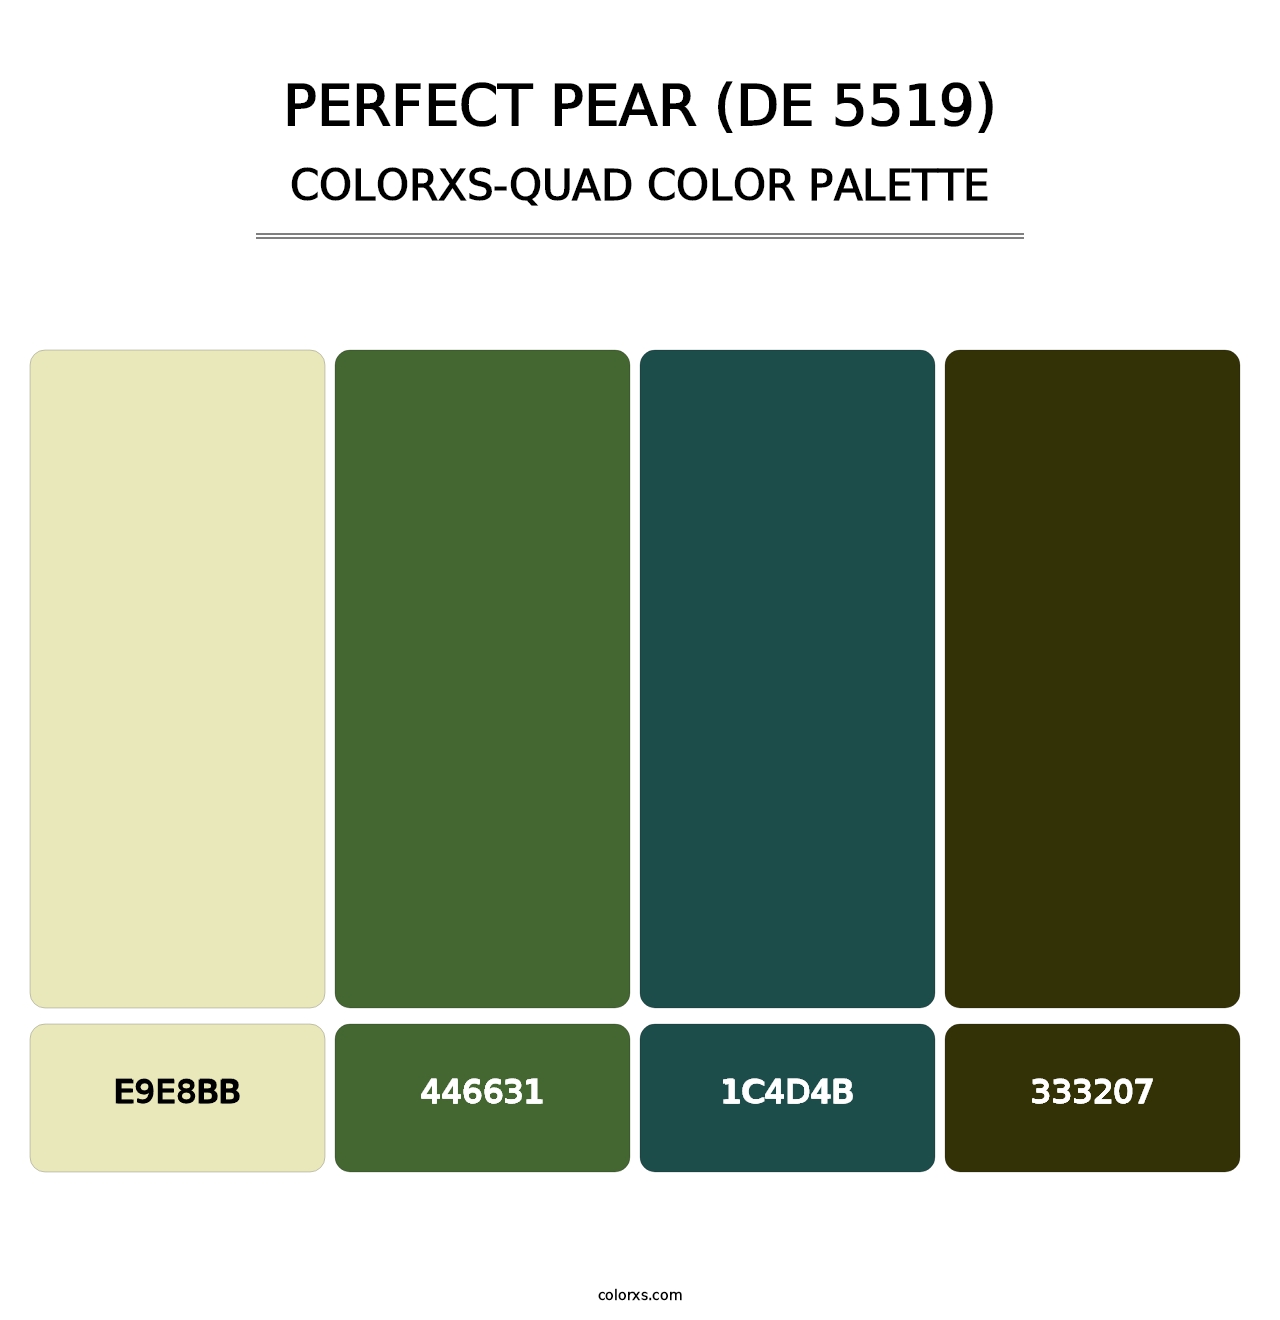 Perfect Pear (DE 5519) - Colorxs Quad Palette